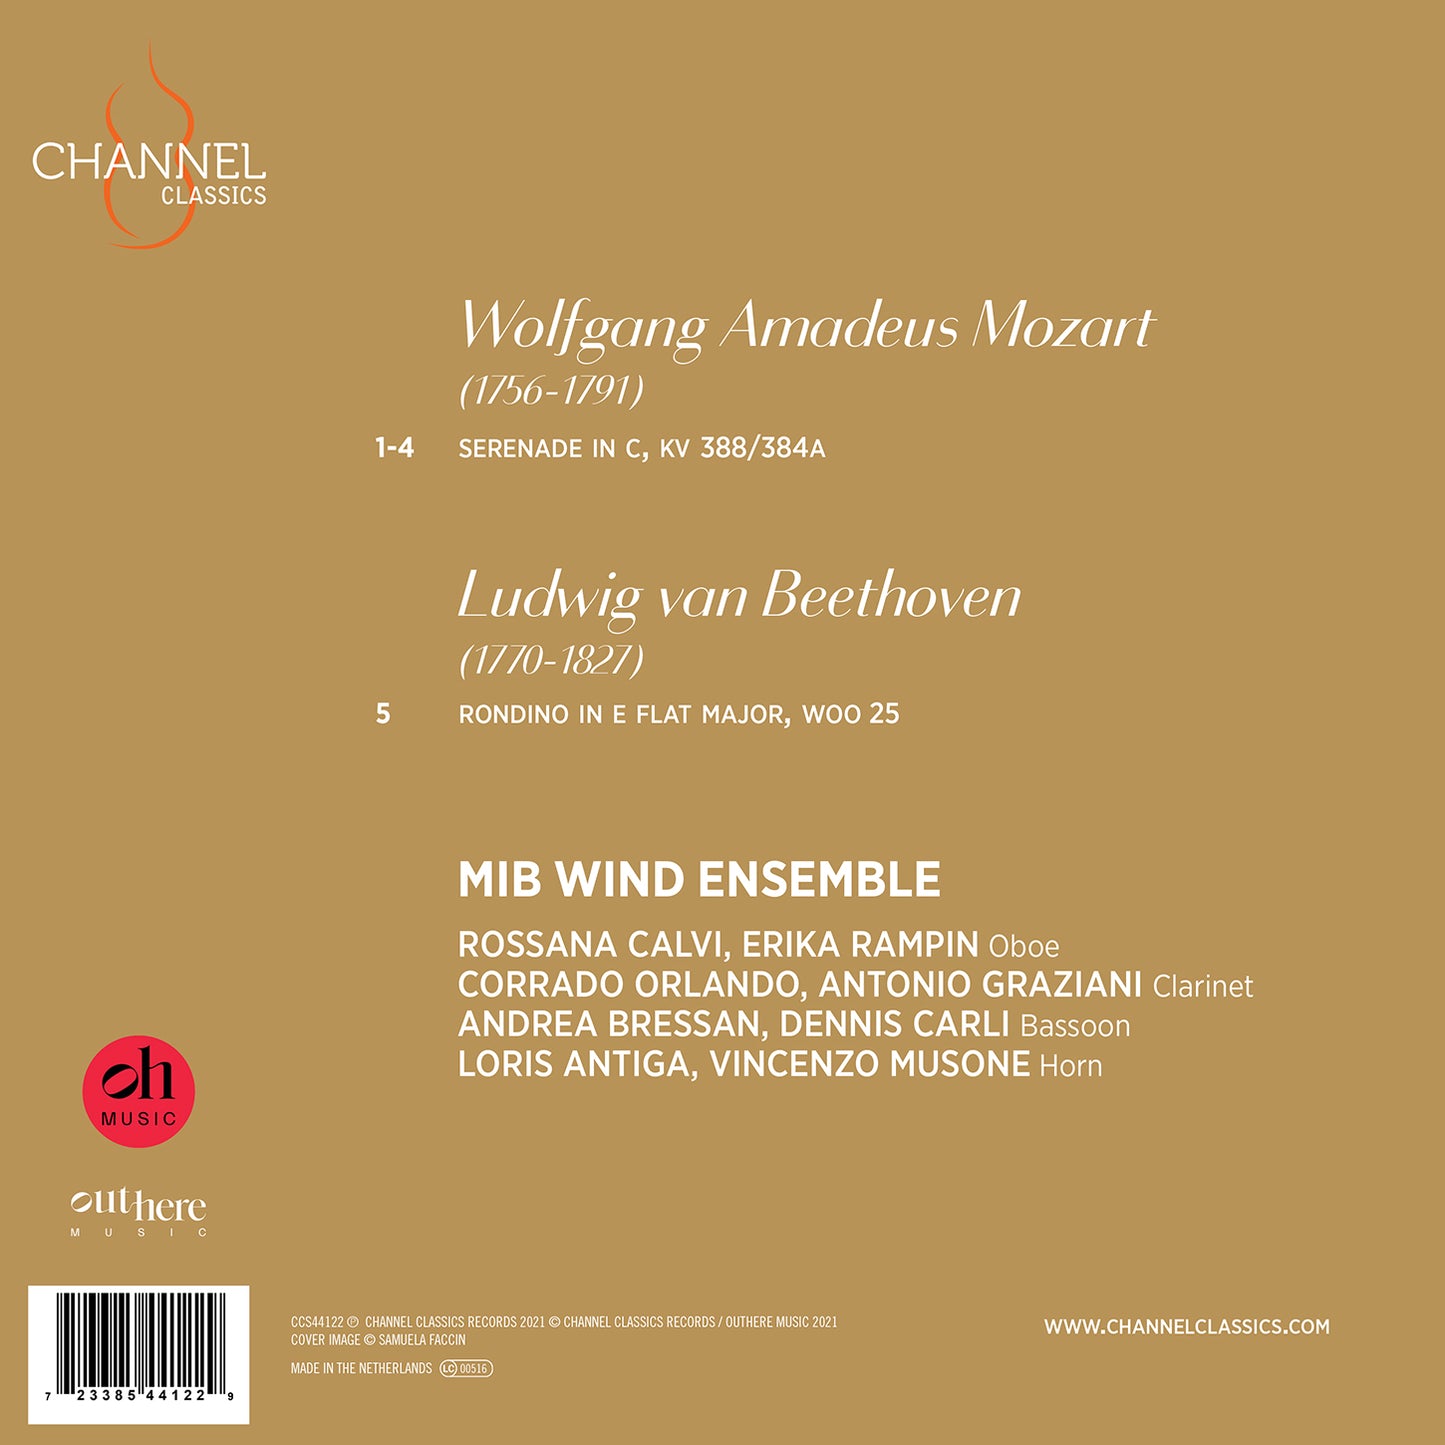 Beethoven: Rondino & Wind Octet; Mozart: Serenade